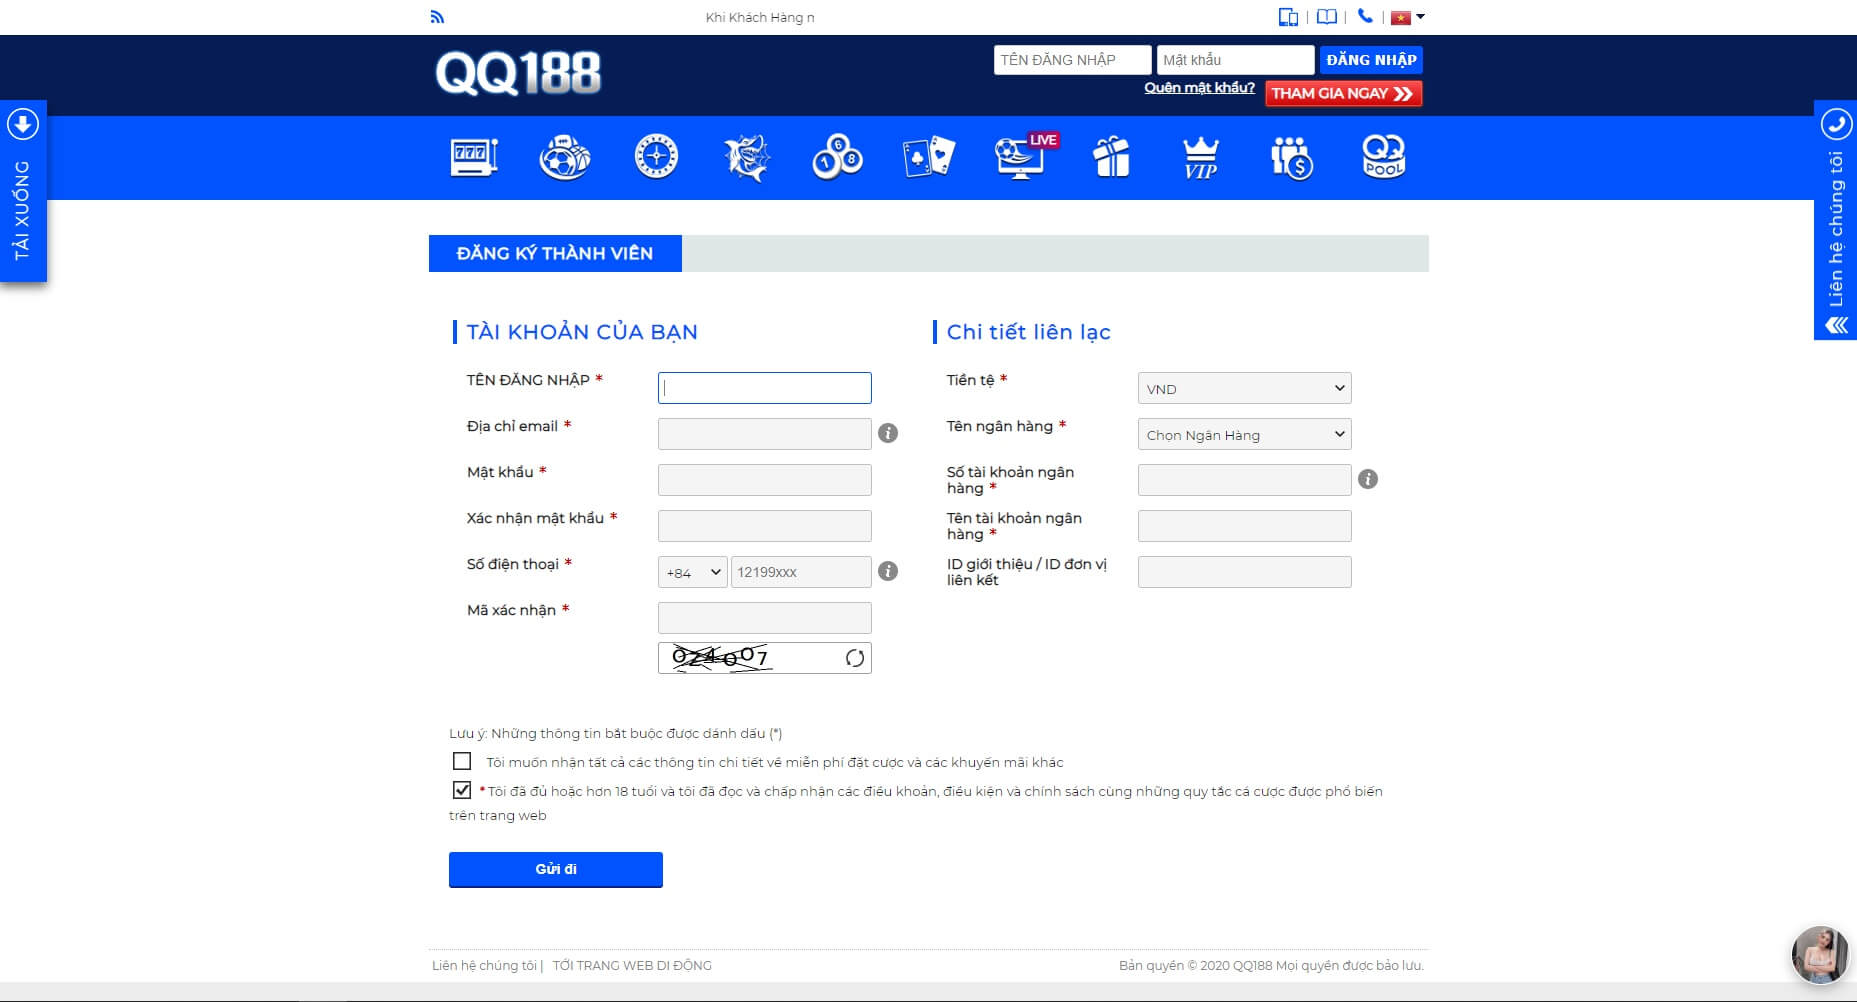 Hướng dẫn đăng ký và đăng nhập tài khoản tại QQ188